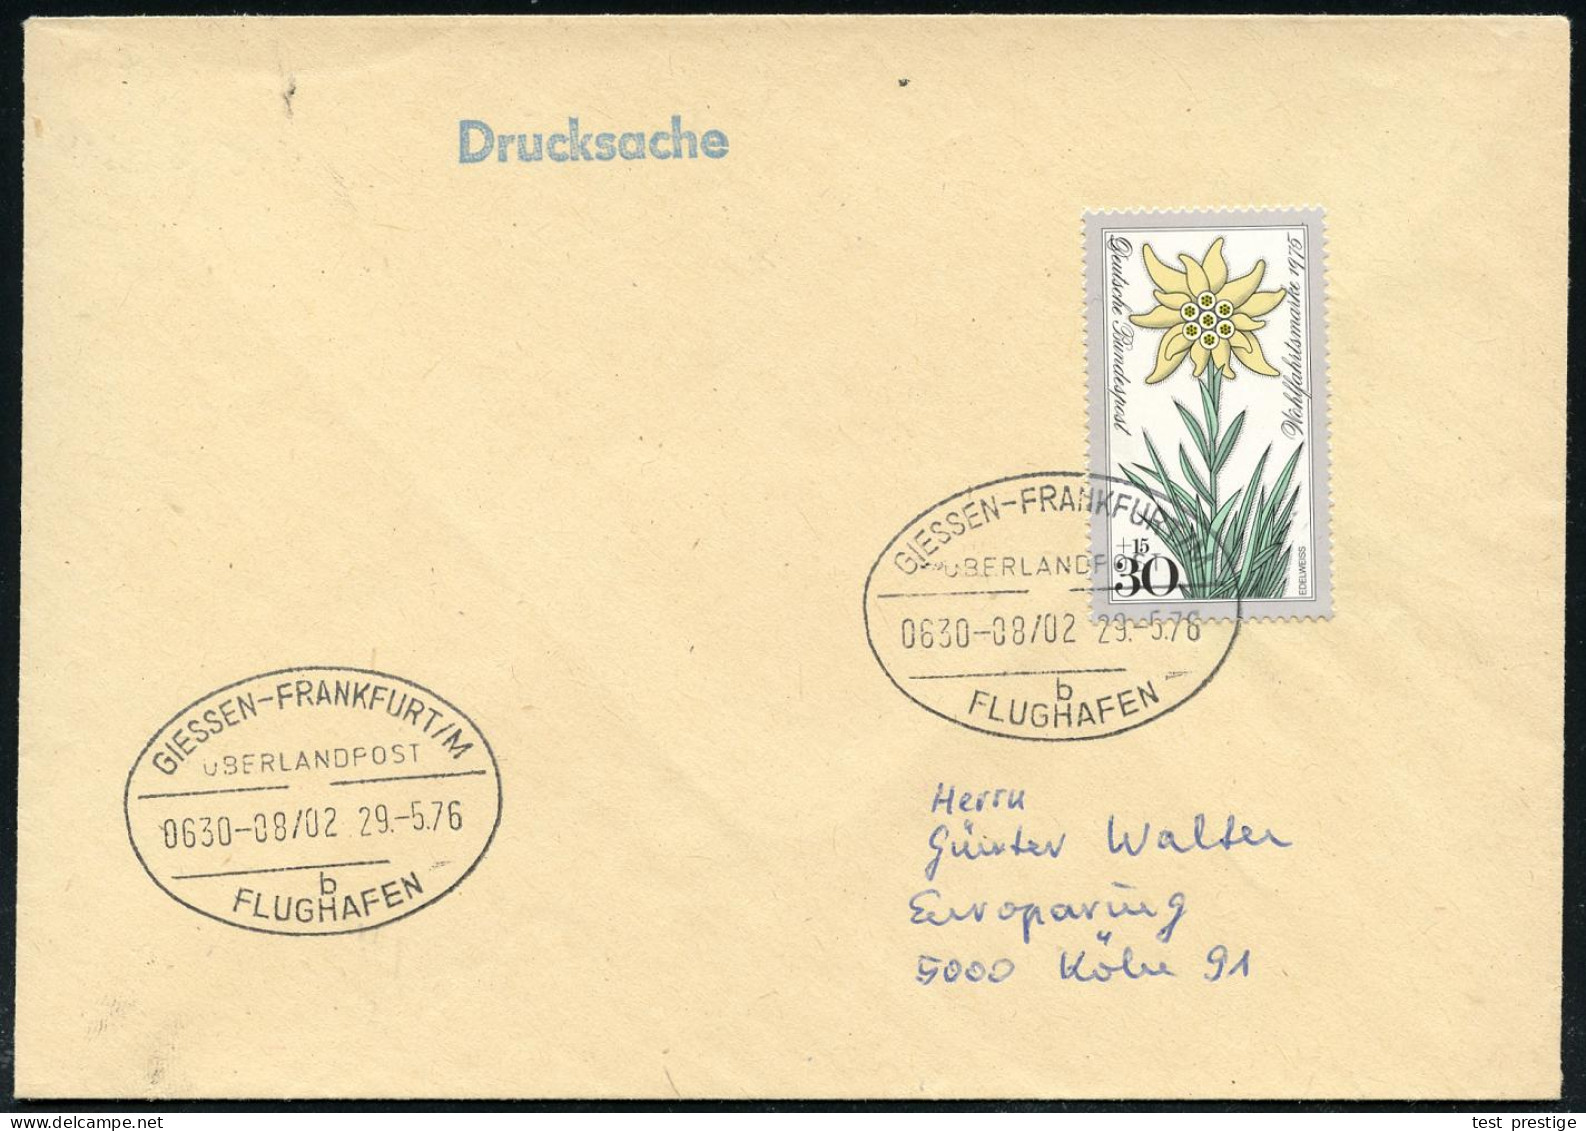 GIESSEN-FRANKFURT/ M/ ÜBERLANDPOST/ 0630-08/ 02/ B/ FLUGHAFEN 1976 (29.5.) Oval-St. = Mobiles Postamt Im Überland-Postom - Coches